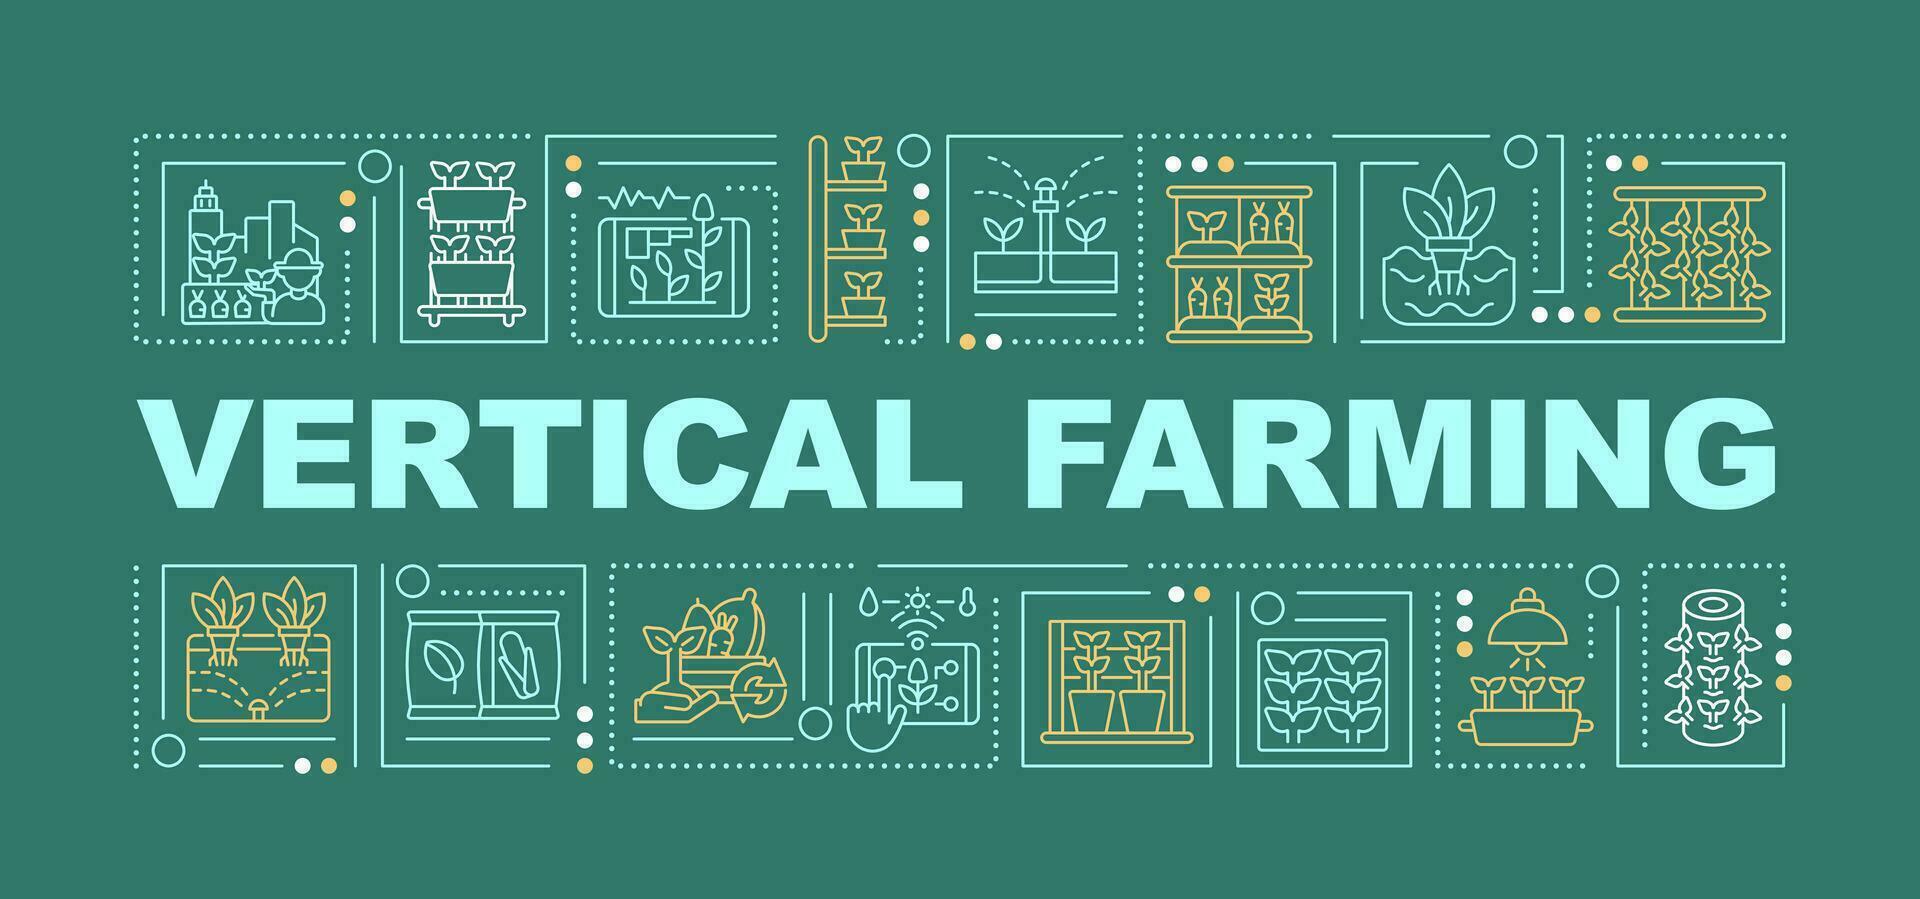 Vertikale Landwirtschaft Text mit verschiedene Symbole auf dunkel Grün monochromatisch Hintergrund, 2d Vektor Illustration.